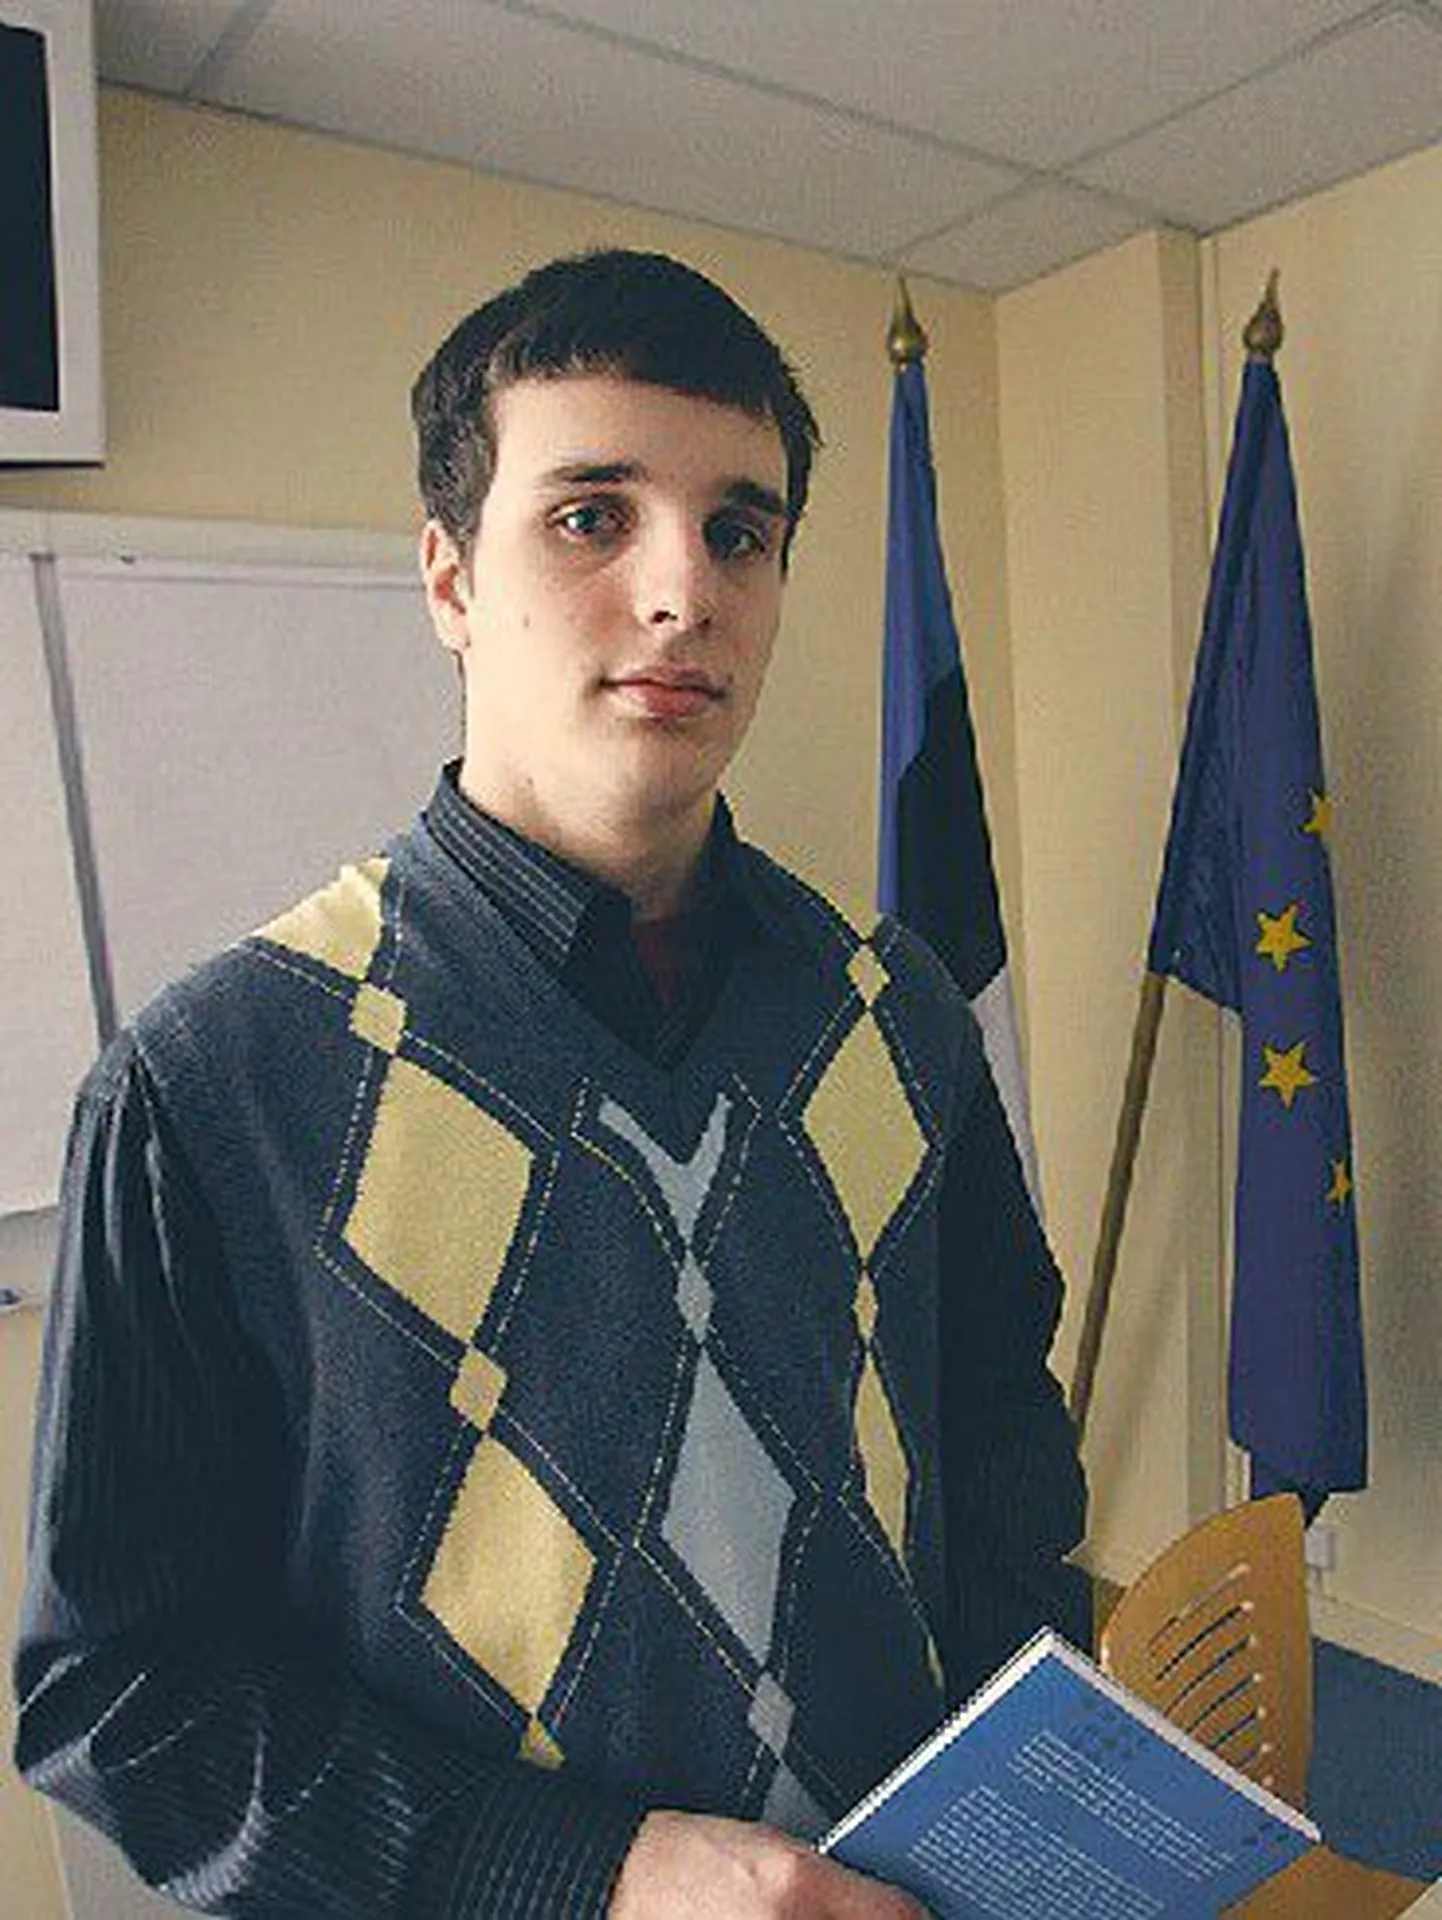 Сергей Метлев,
учащийся Мустамяэской реальной 
гимназии